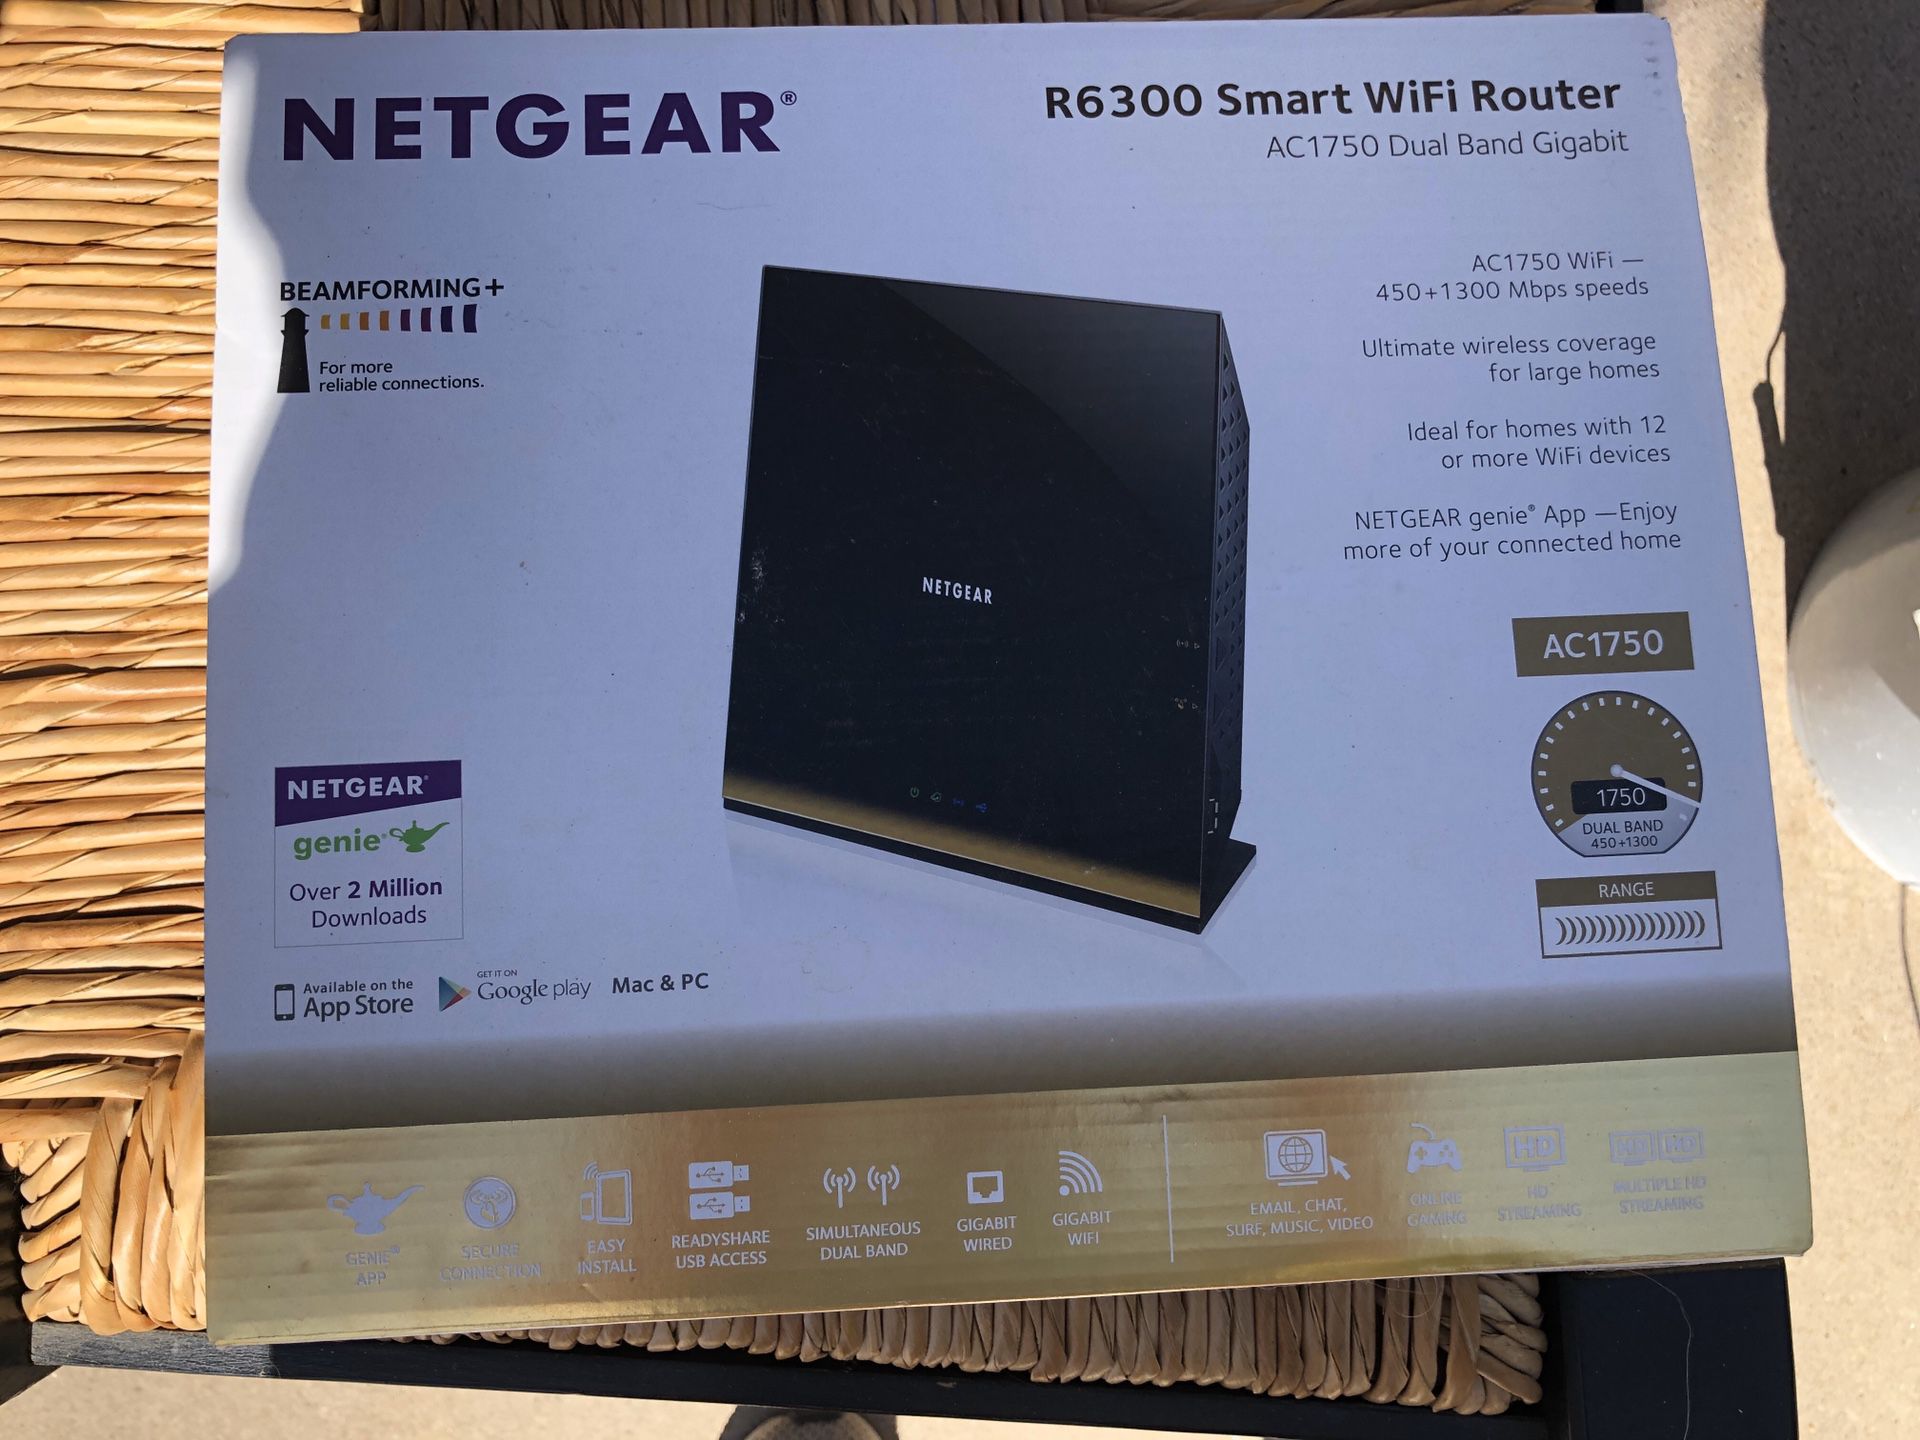 Netgear R6300 Smart WiFi router